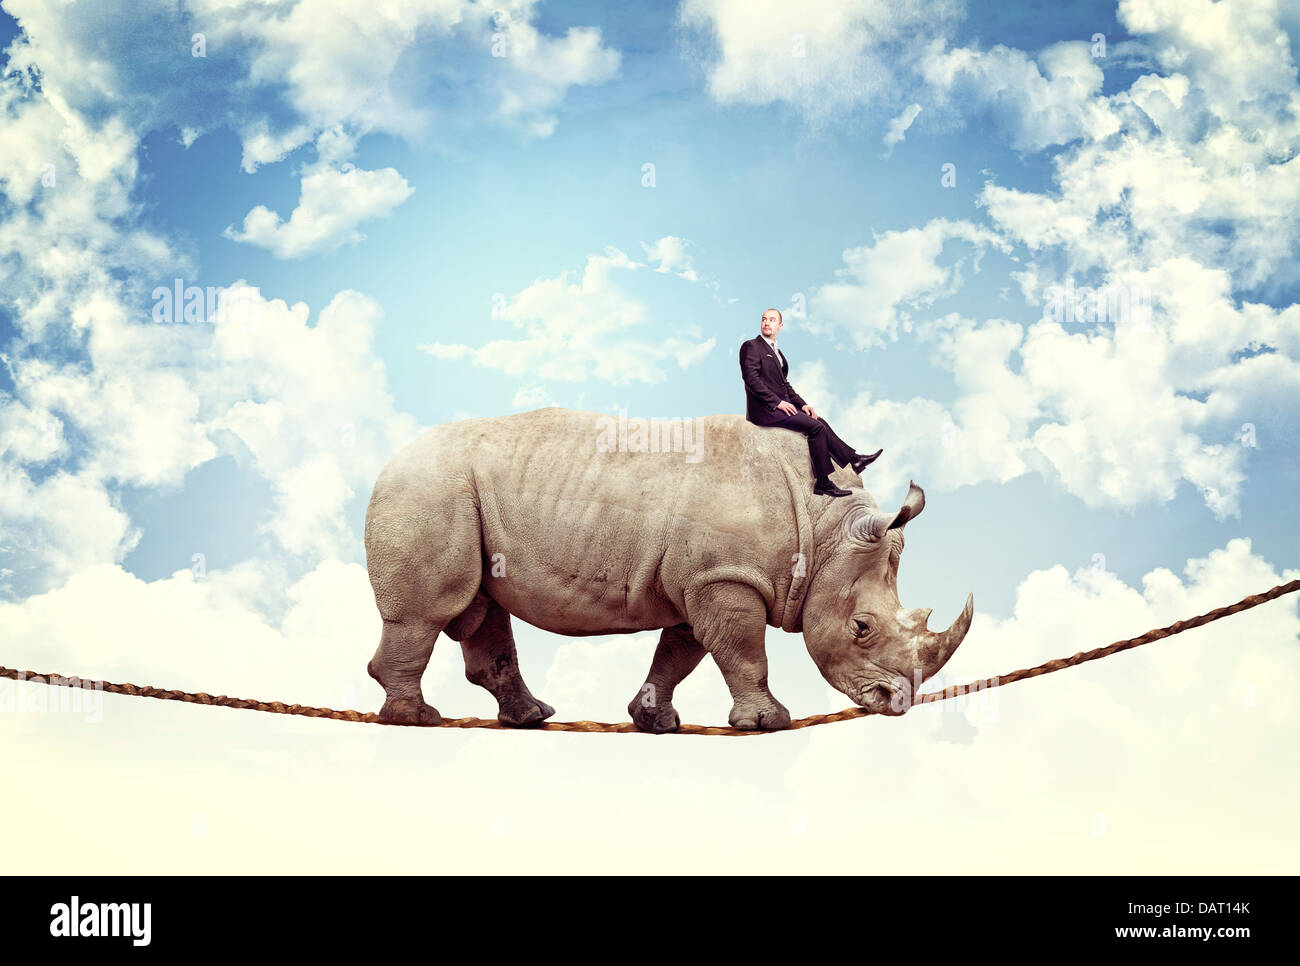 Imprenditore ride rhino sulla fune Foto Stock